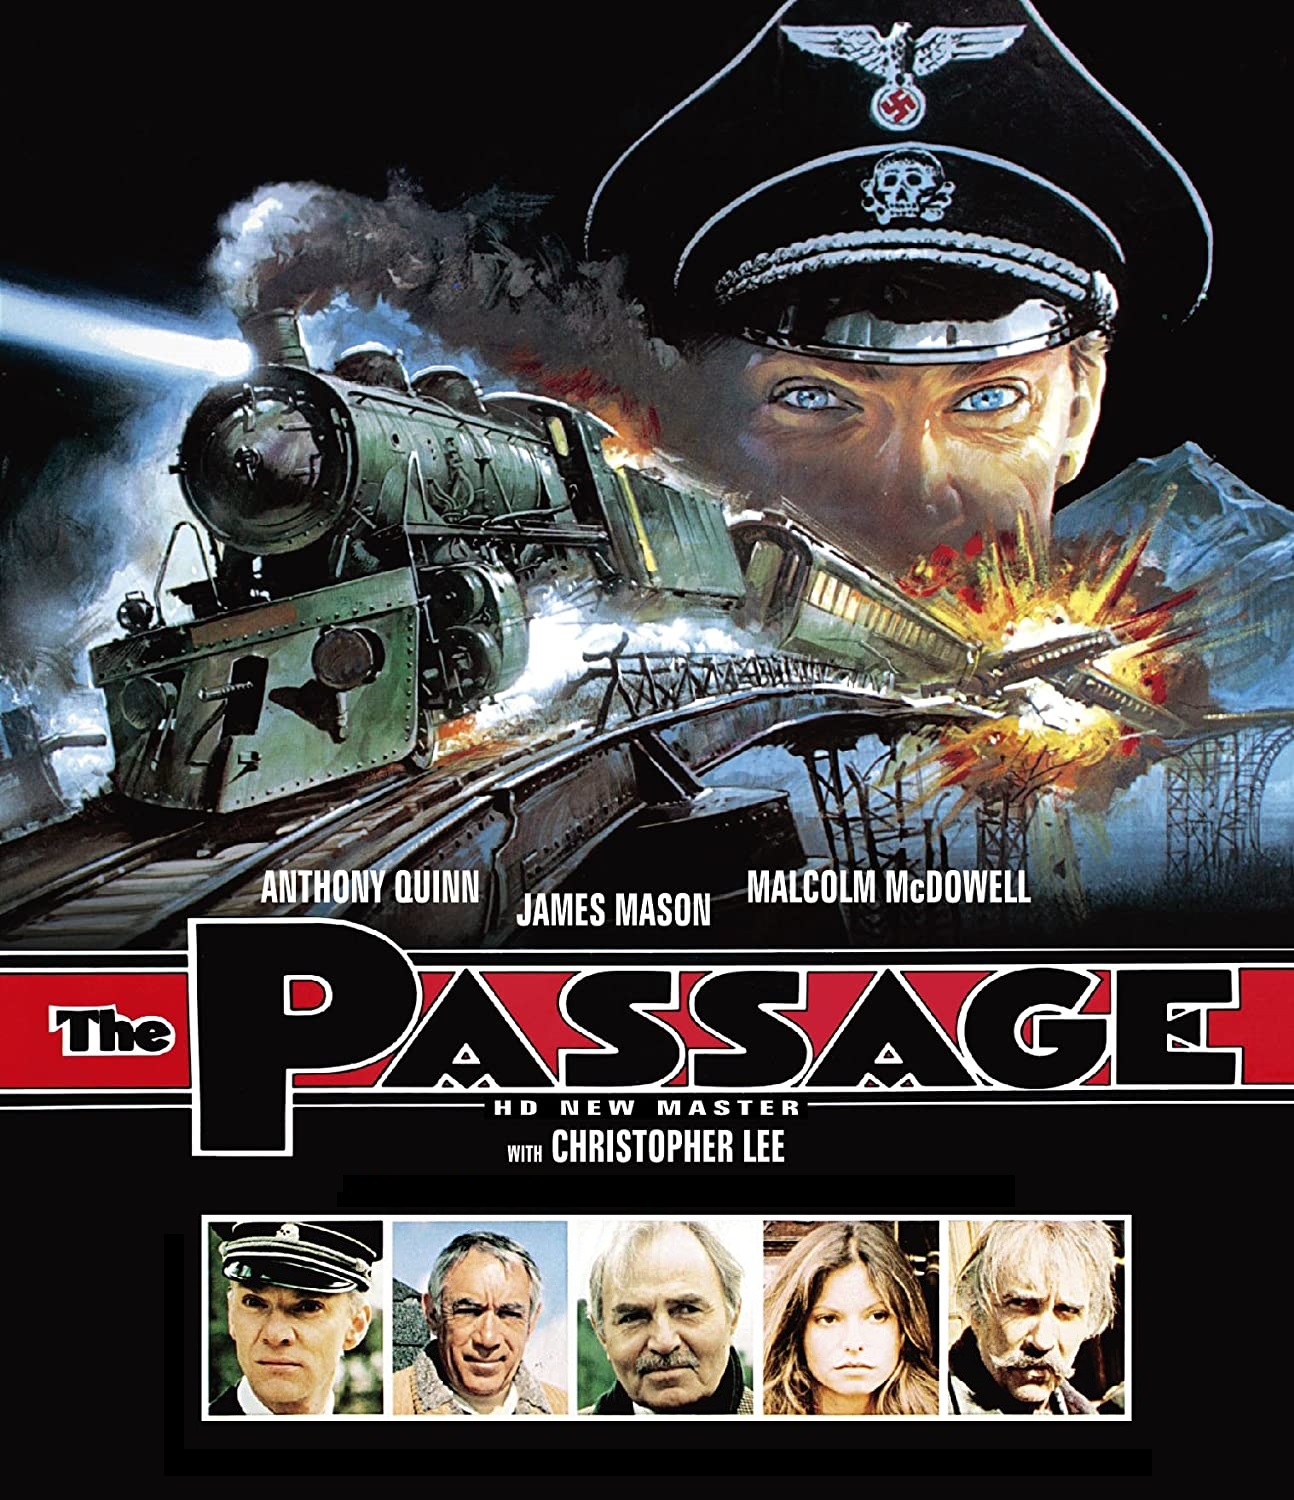 EN - The Passage (1979)